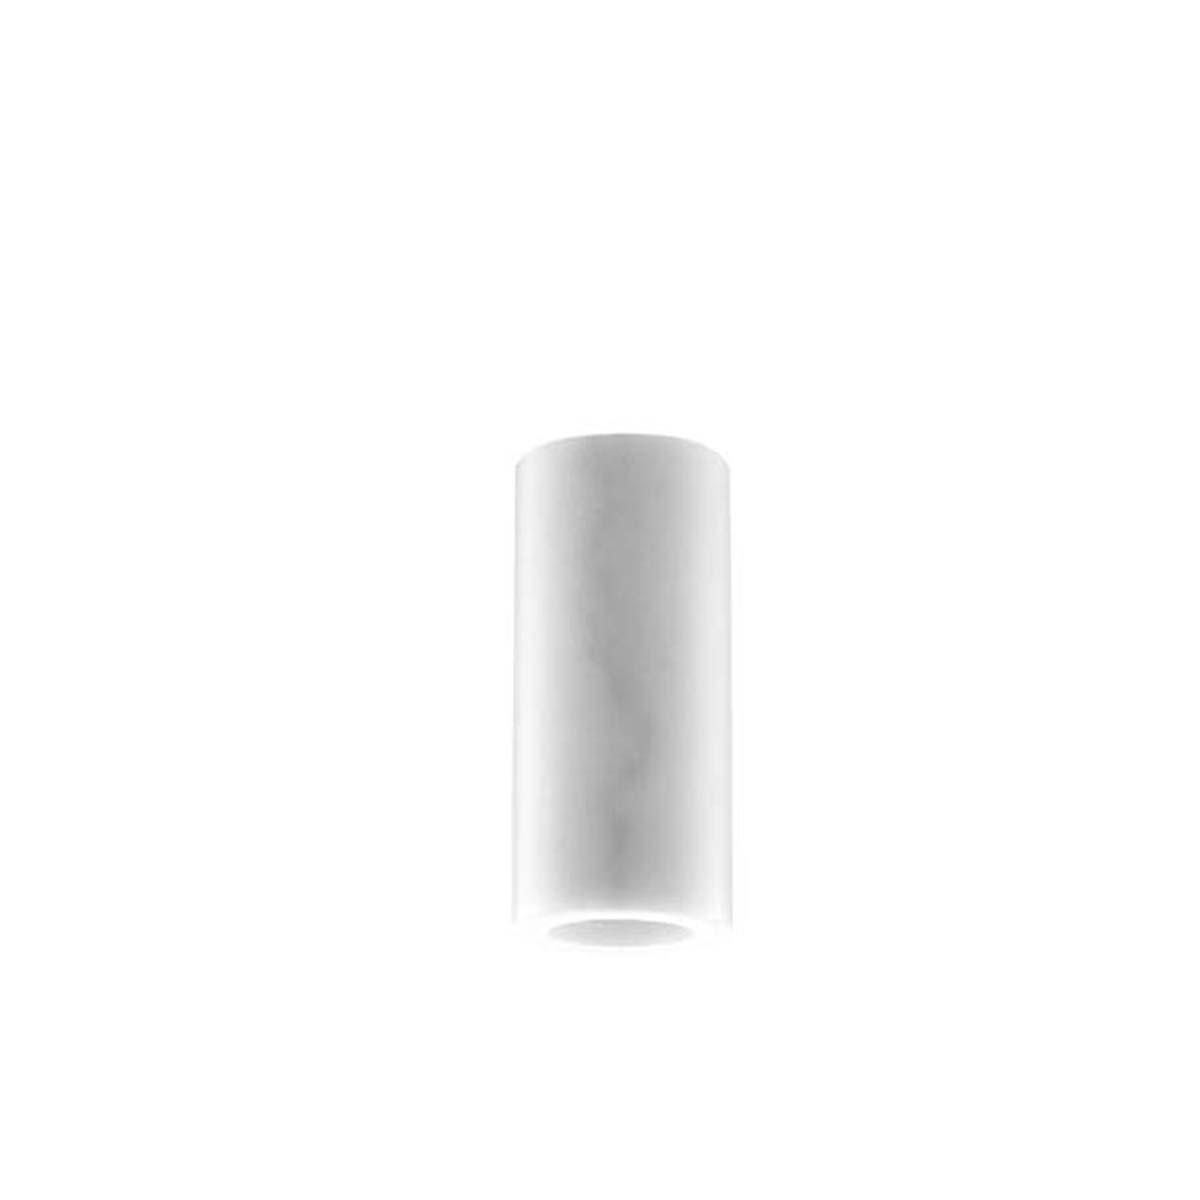 Tangla lighting - TLLH030WT - lamp holder aluminum - E27 - white marble finish